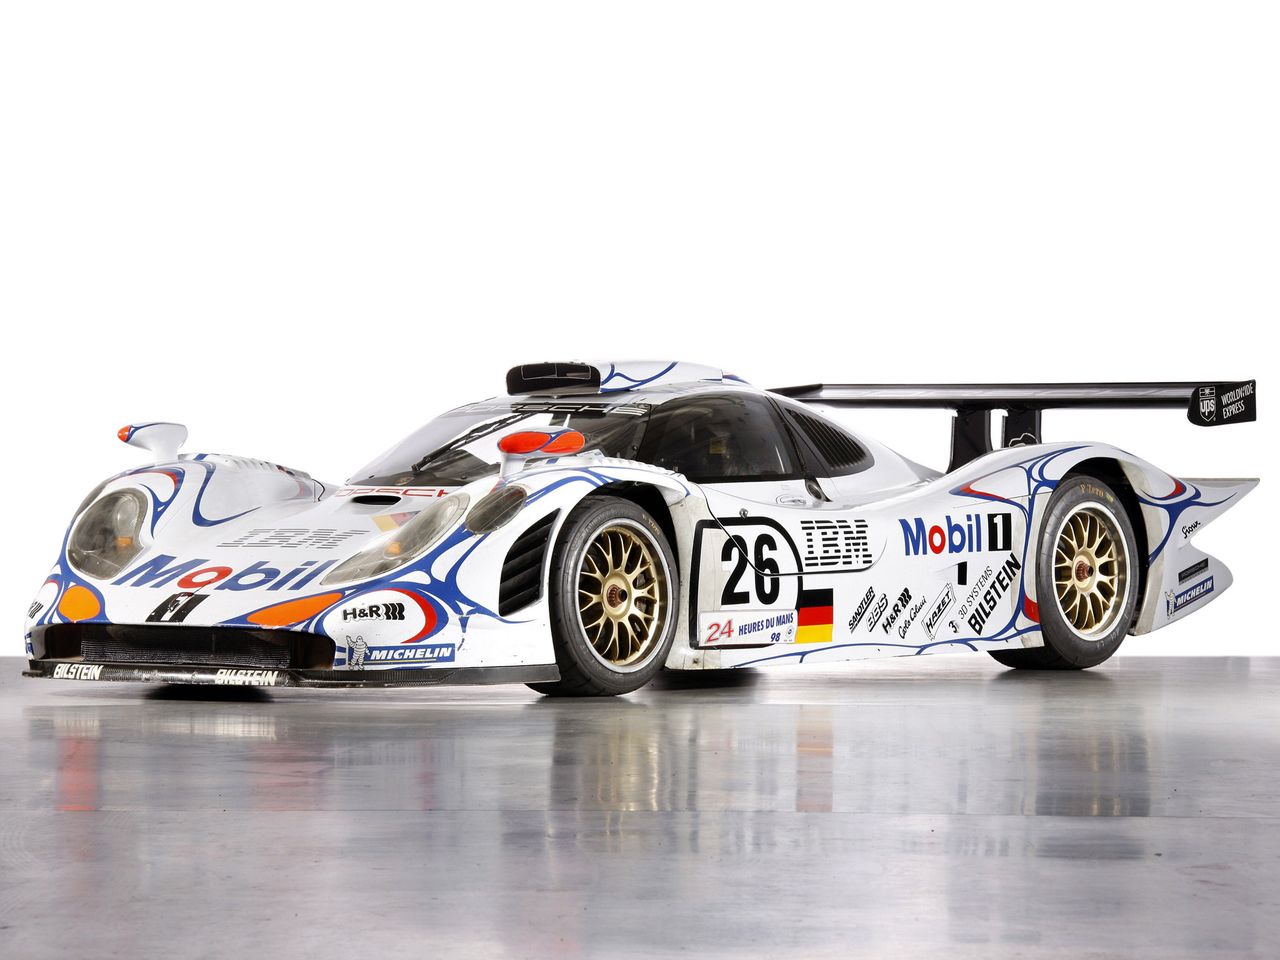 Ostatni triumfator w Le Mans dla Porsche - model 911 GT1 '98 z numerem 26